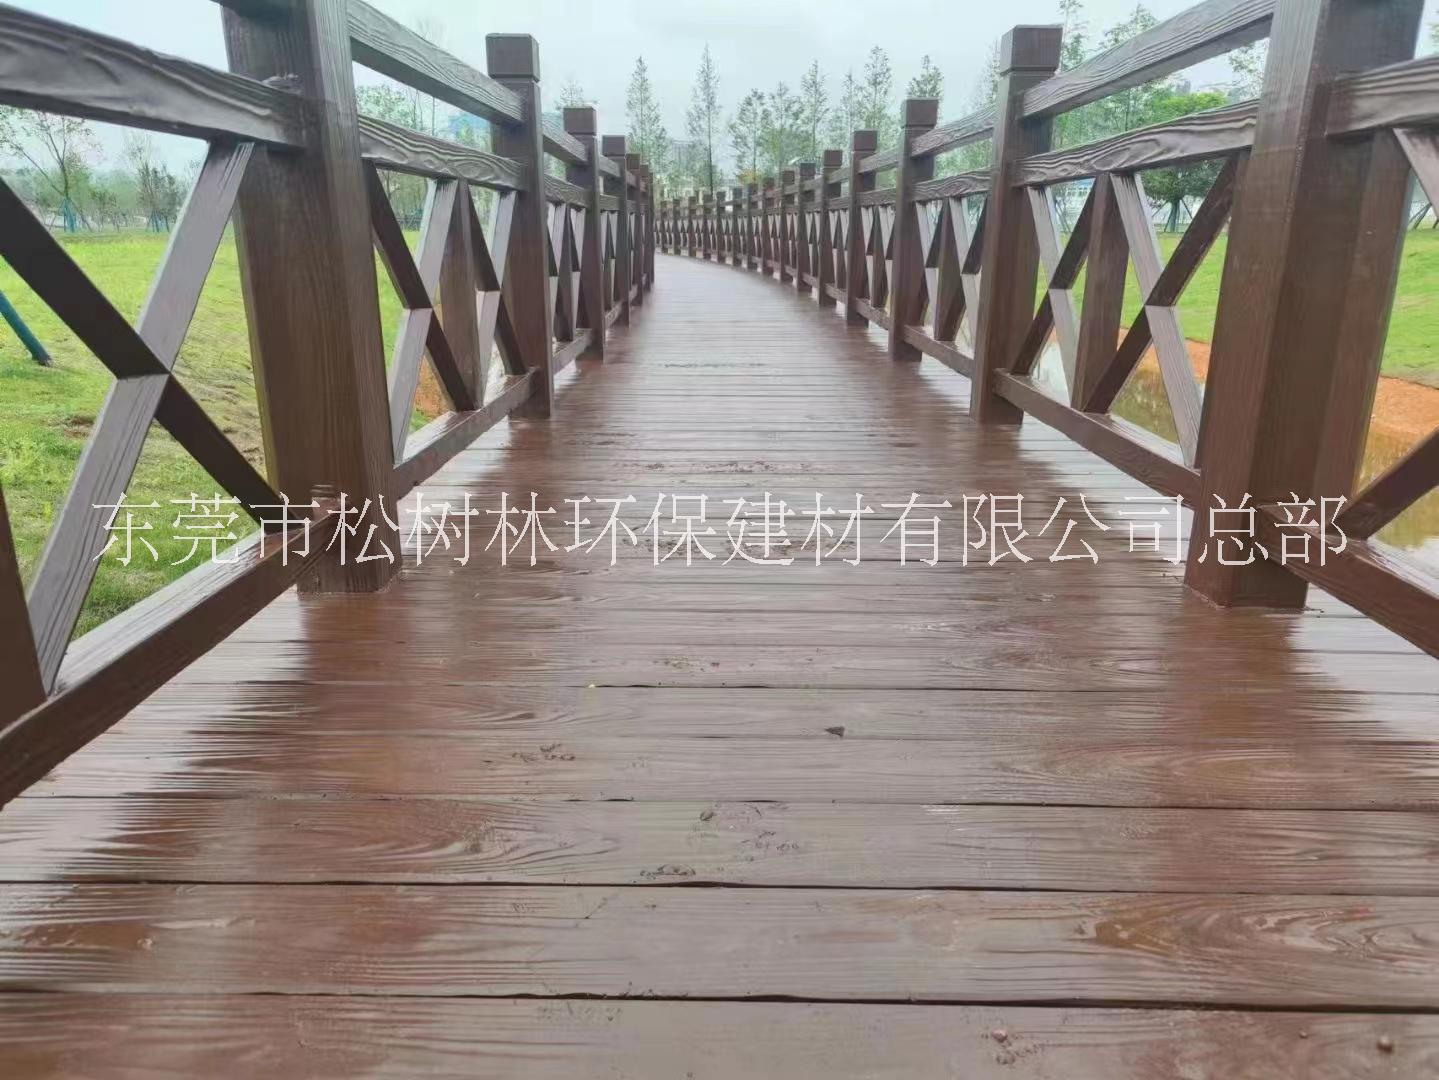 深圳仿木地板生产厂家_仿木纹钢筋混凝土地板多少钱一平方